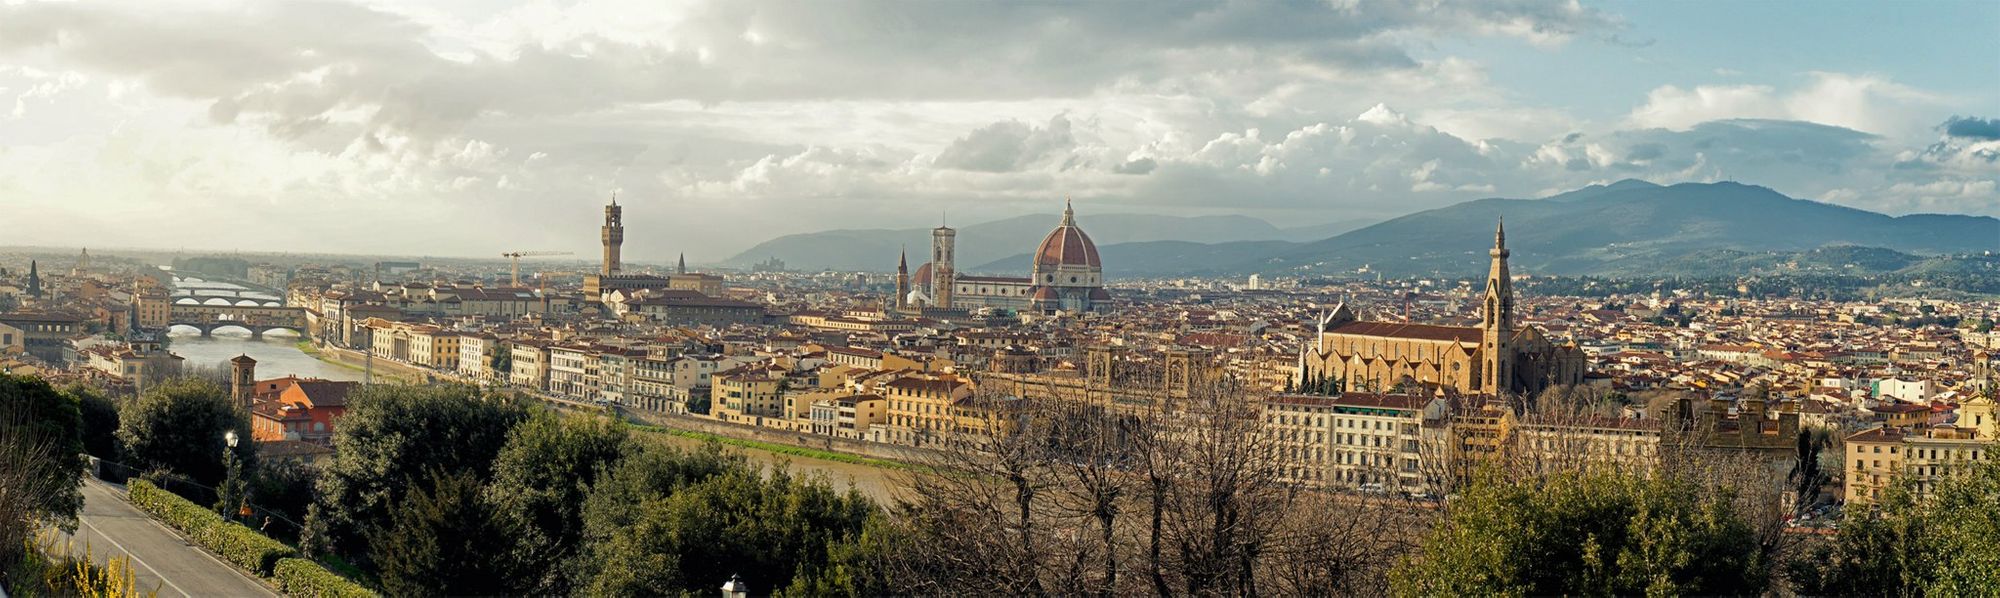 Firenze & Pisa là hai thành phố nổi tiếng tại nước Ý với kiến trúc đặc trưng và lịch sử giàu có. Bạn sẽ không thể bỏ qua cảnh phố cổ Firenze và tháp chuông nghiêng nổi tiếng ở Pisa. Hãy xem hình ảnh về hai thành phố này để cảm nhận thêm vẻ đẹp của chúng. 